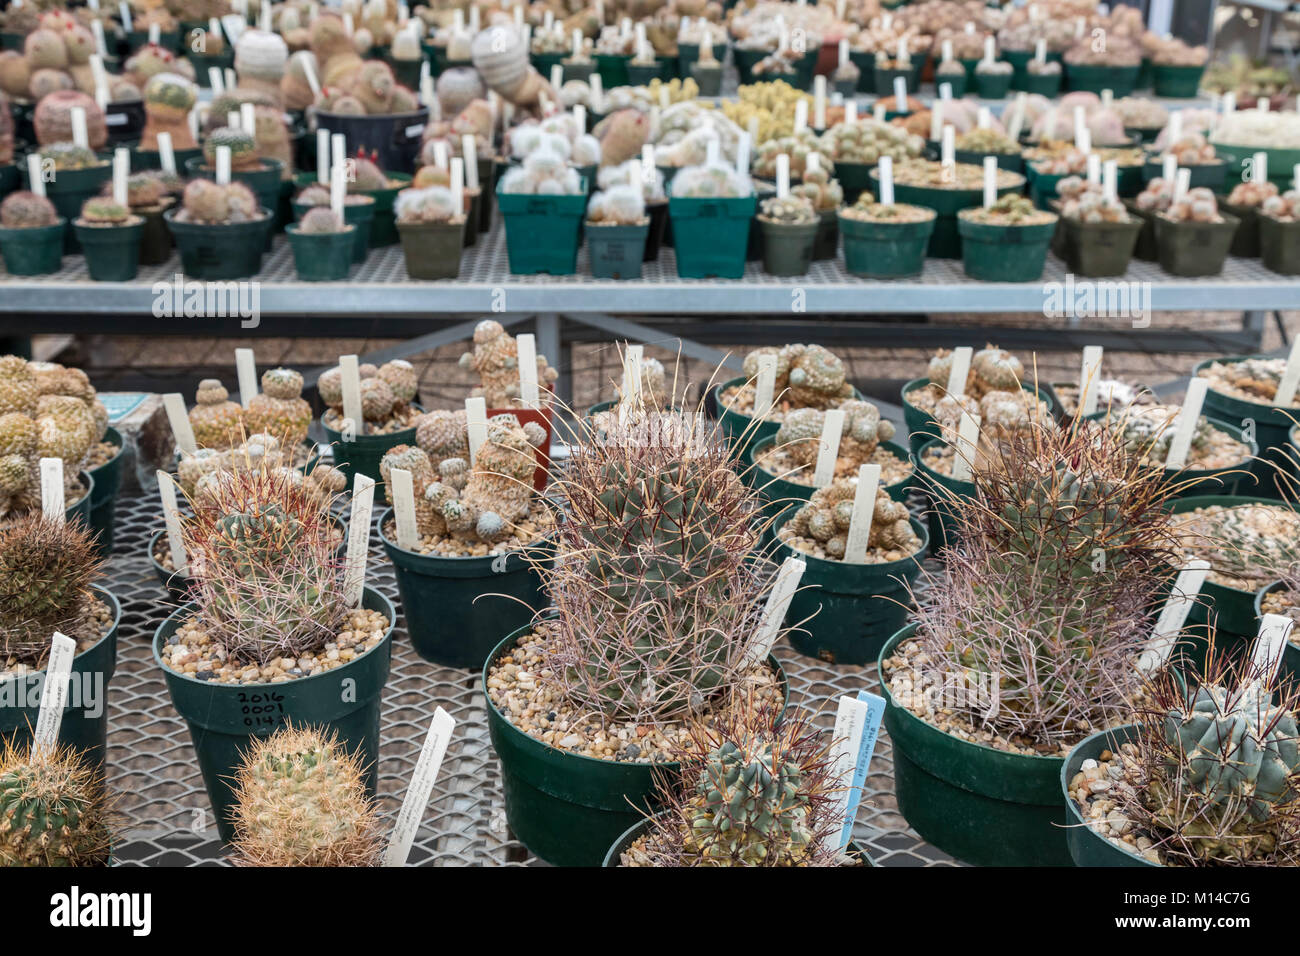 Fort Davis, Texas - El Chihuahuan Desert Research Institute's Cactus gases de colección, formada por especies de cactus desde los Estados Unidos y México Foto de stock